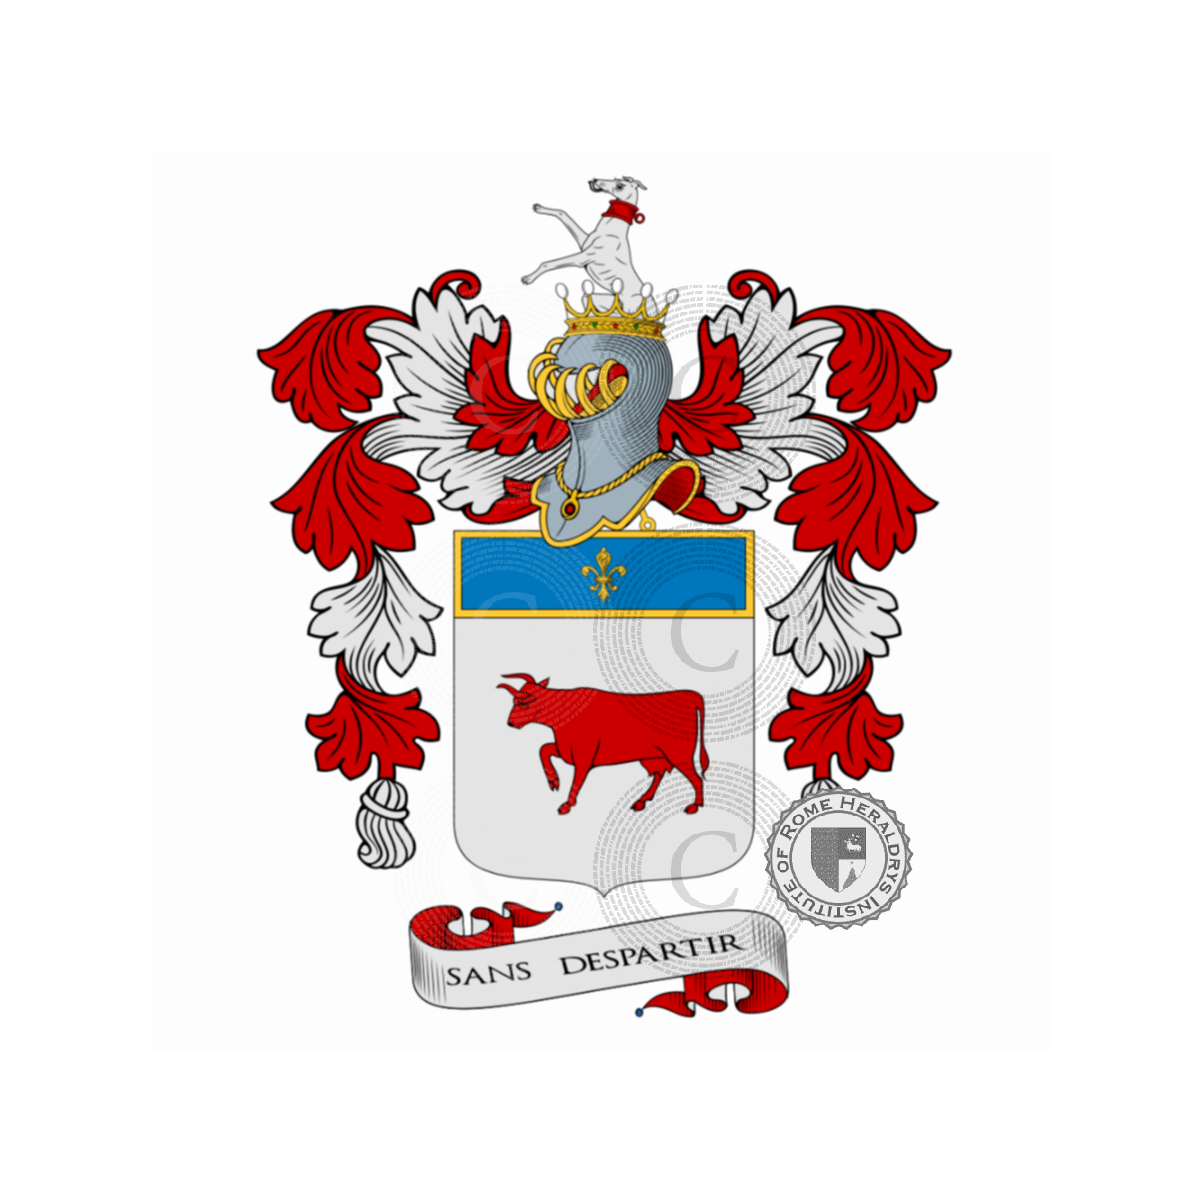 Escudo de la familiaVacca, della Vacca,Vaccara,Vaccari